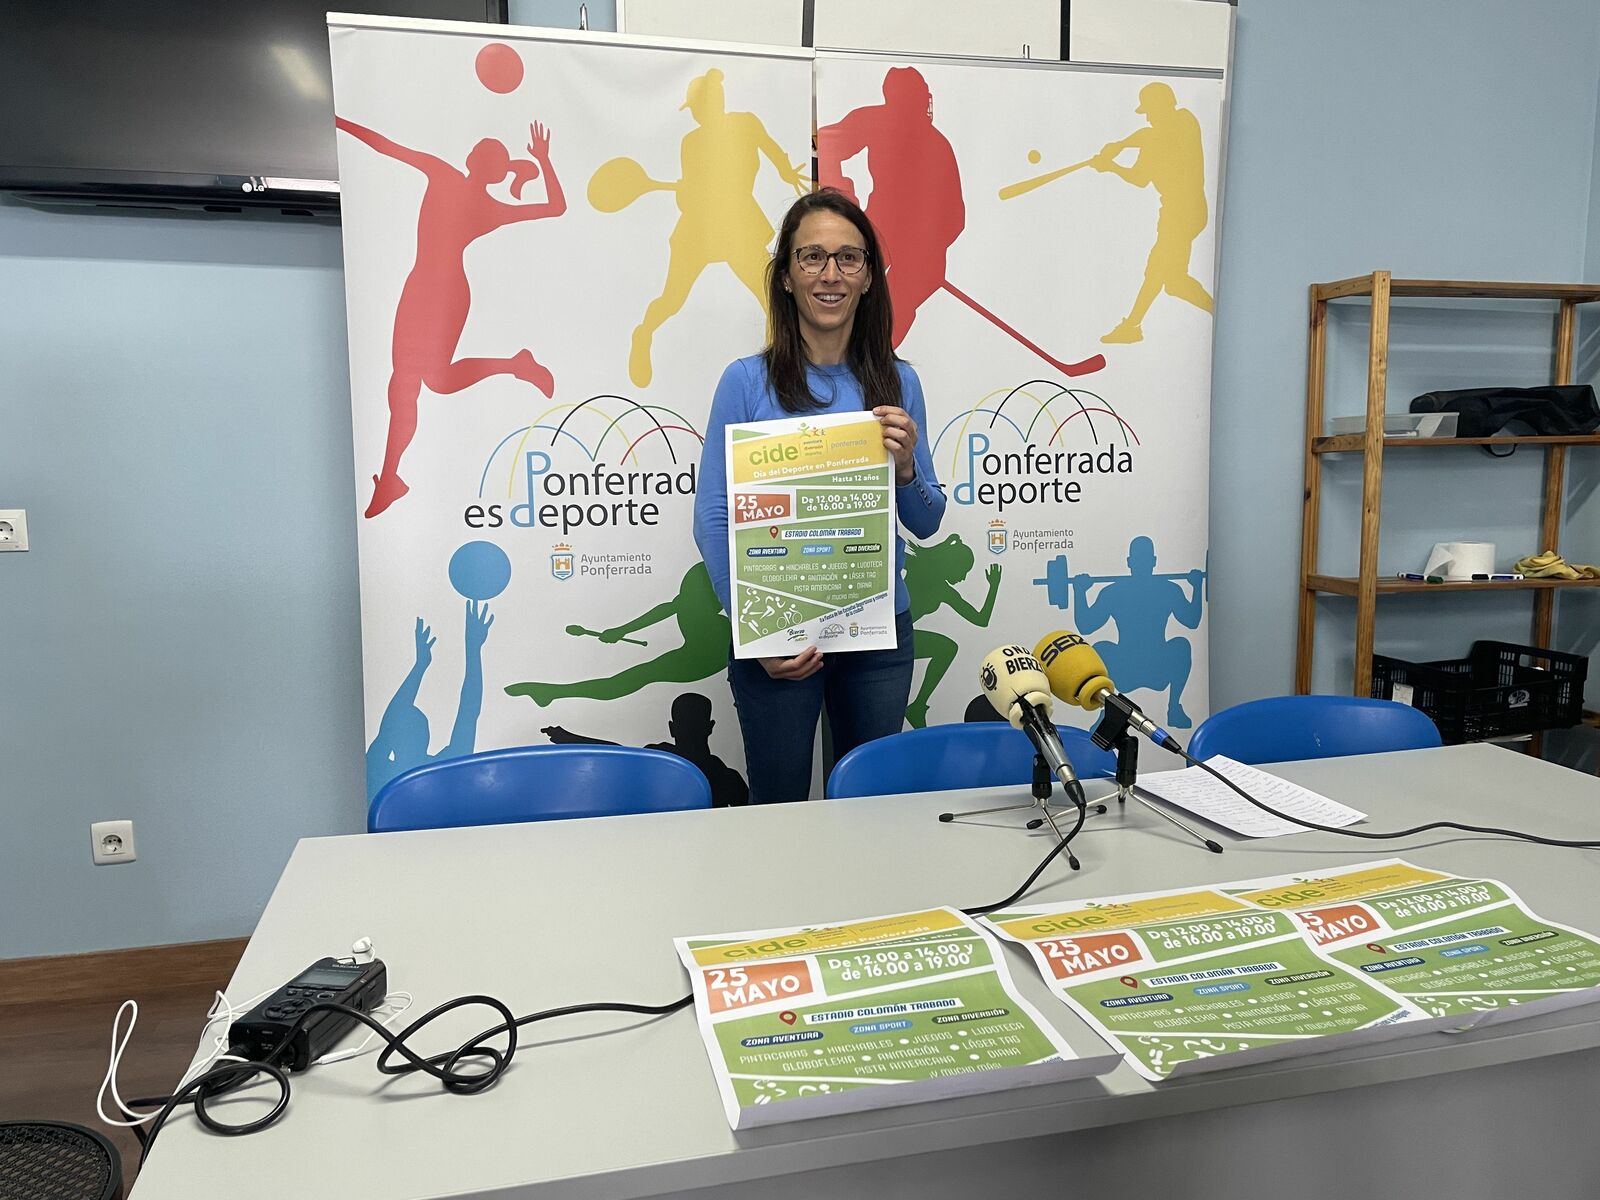 La concejala Eva González presenta la fiesta del deporte escolar. | Javier Fernández